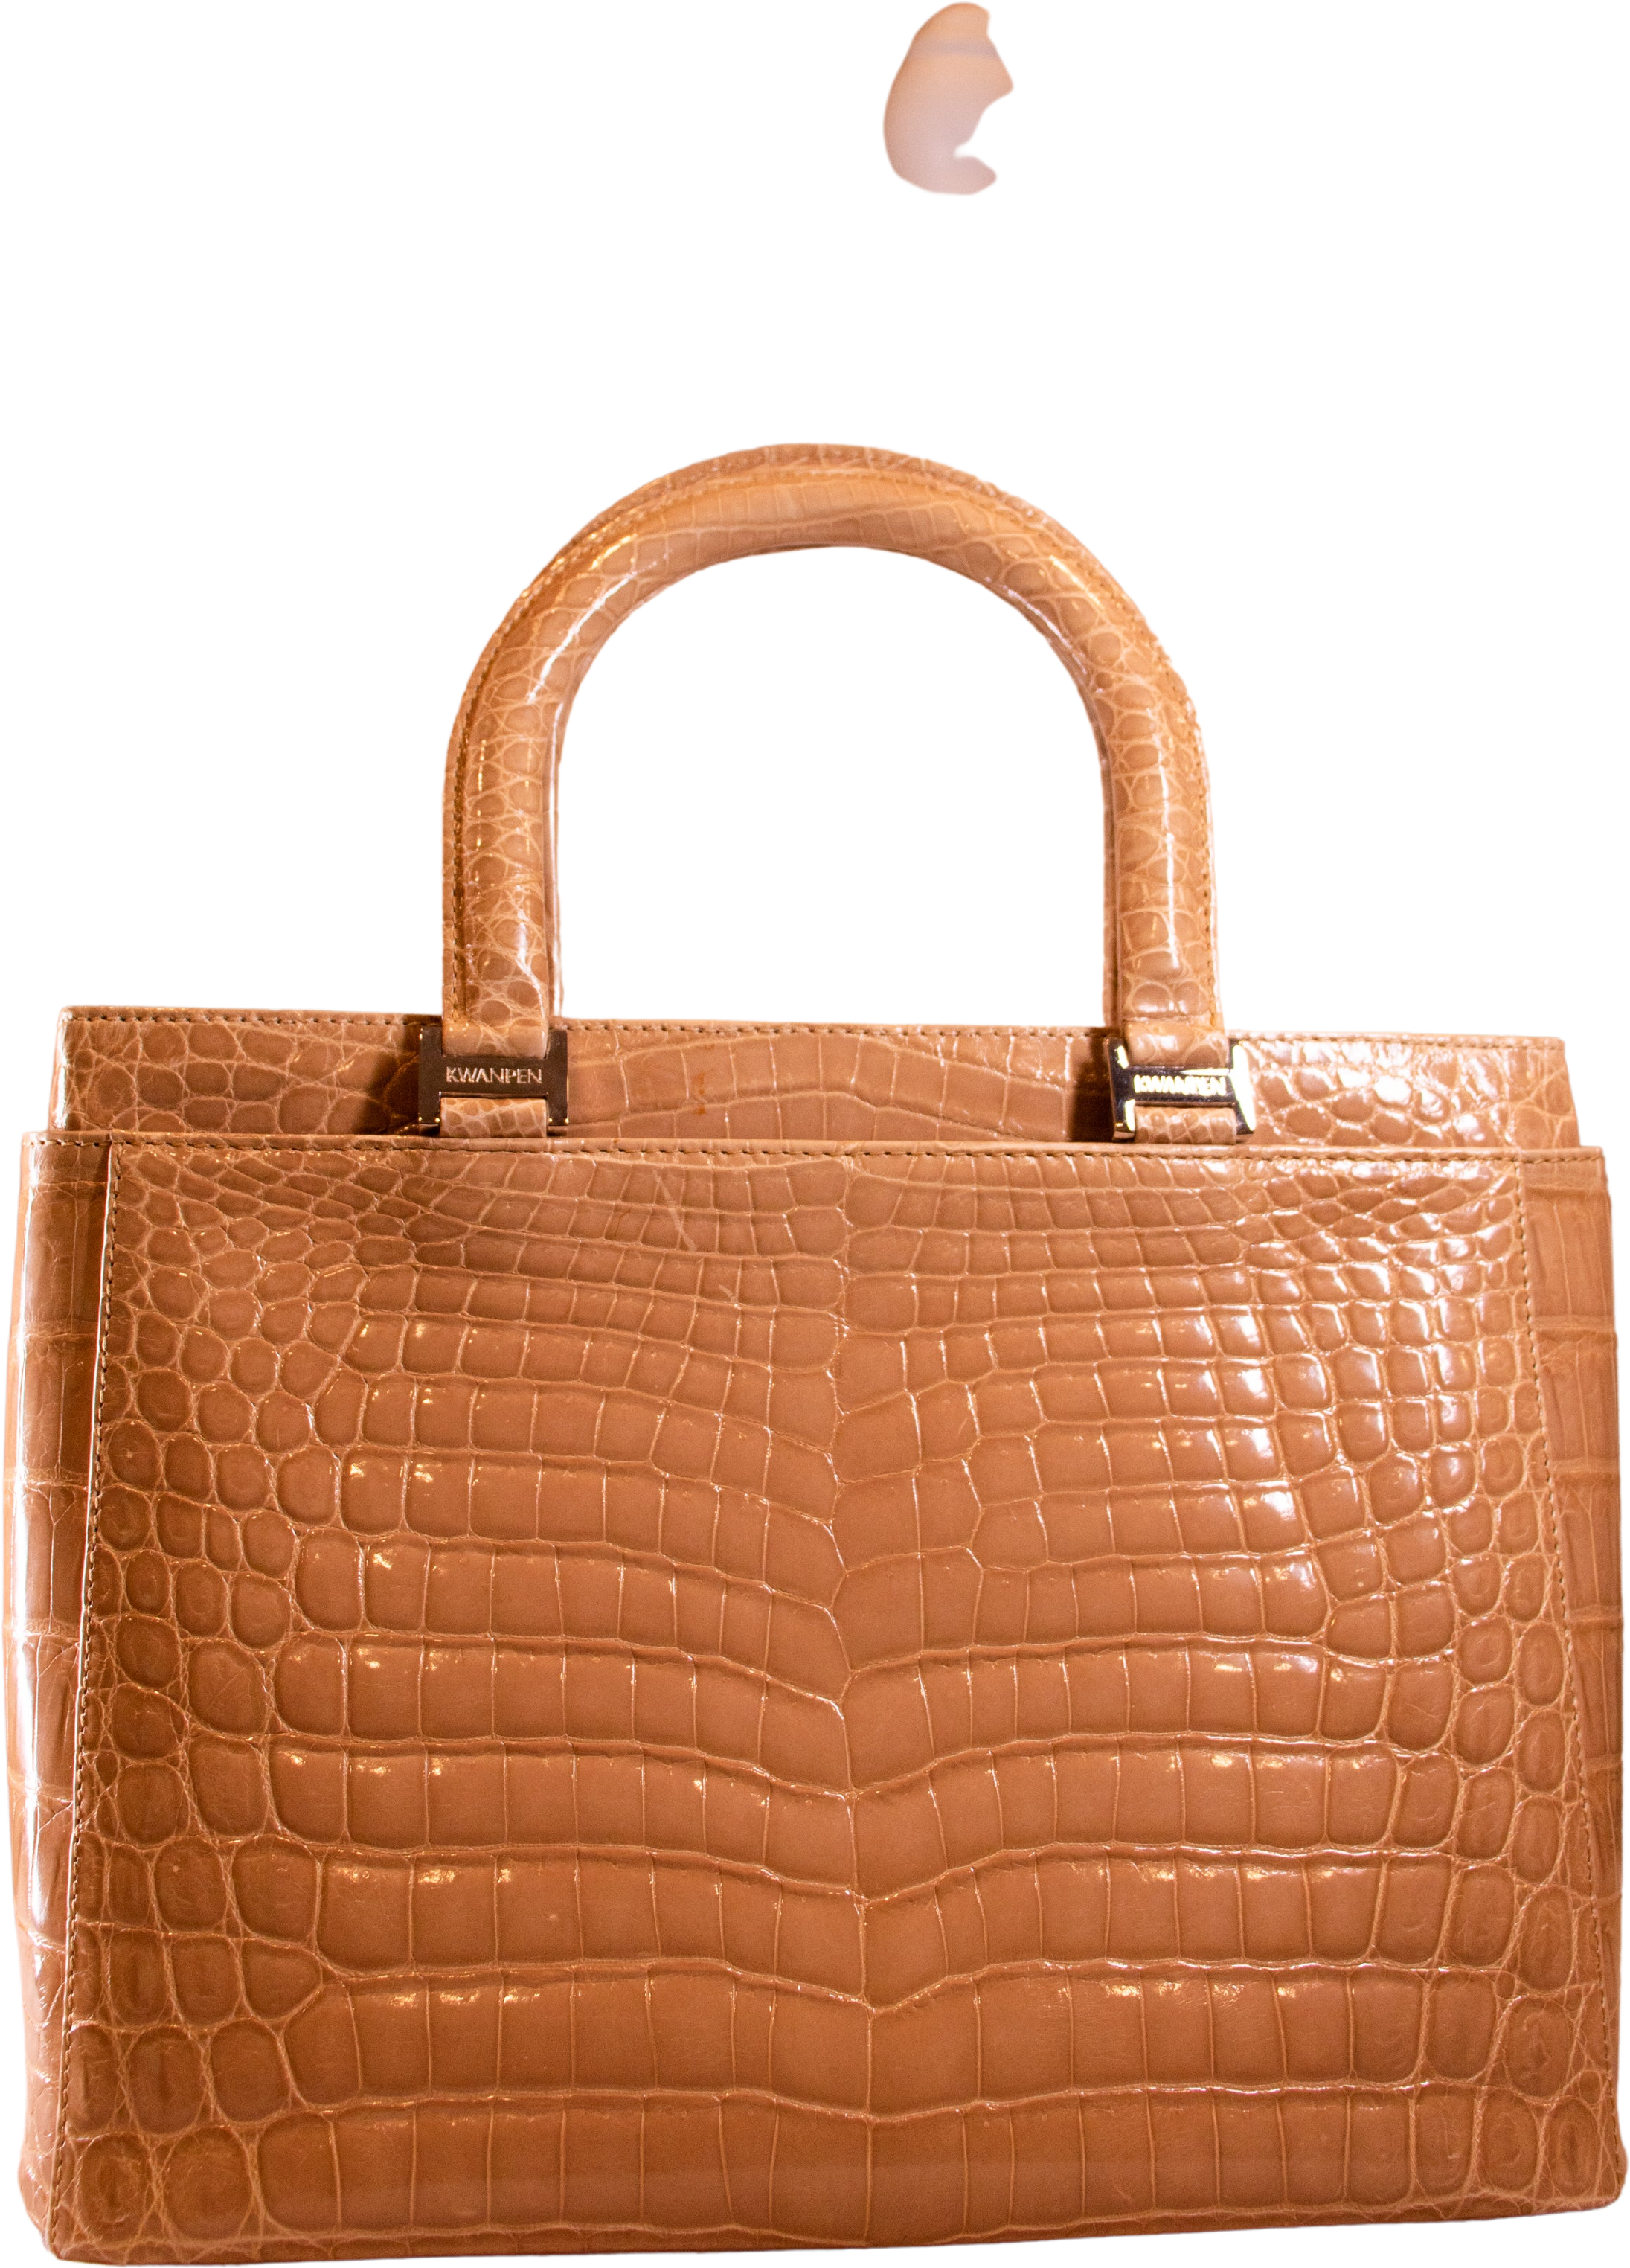 Kwanpen Bags & Handbags for Women